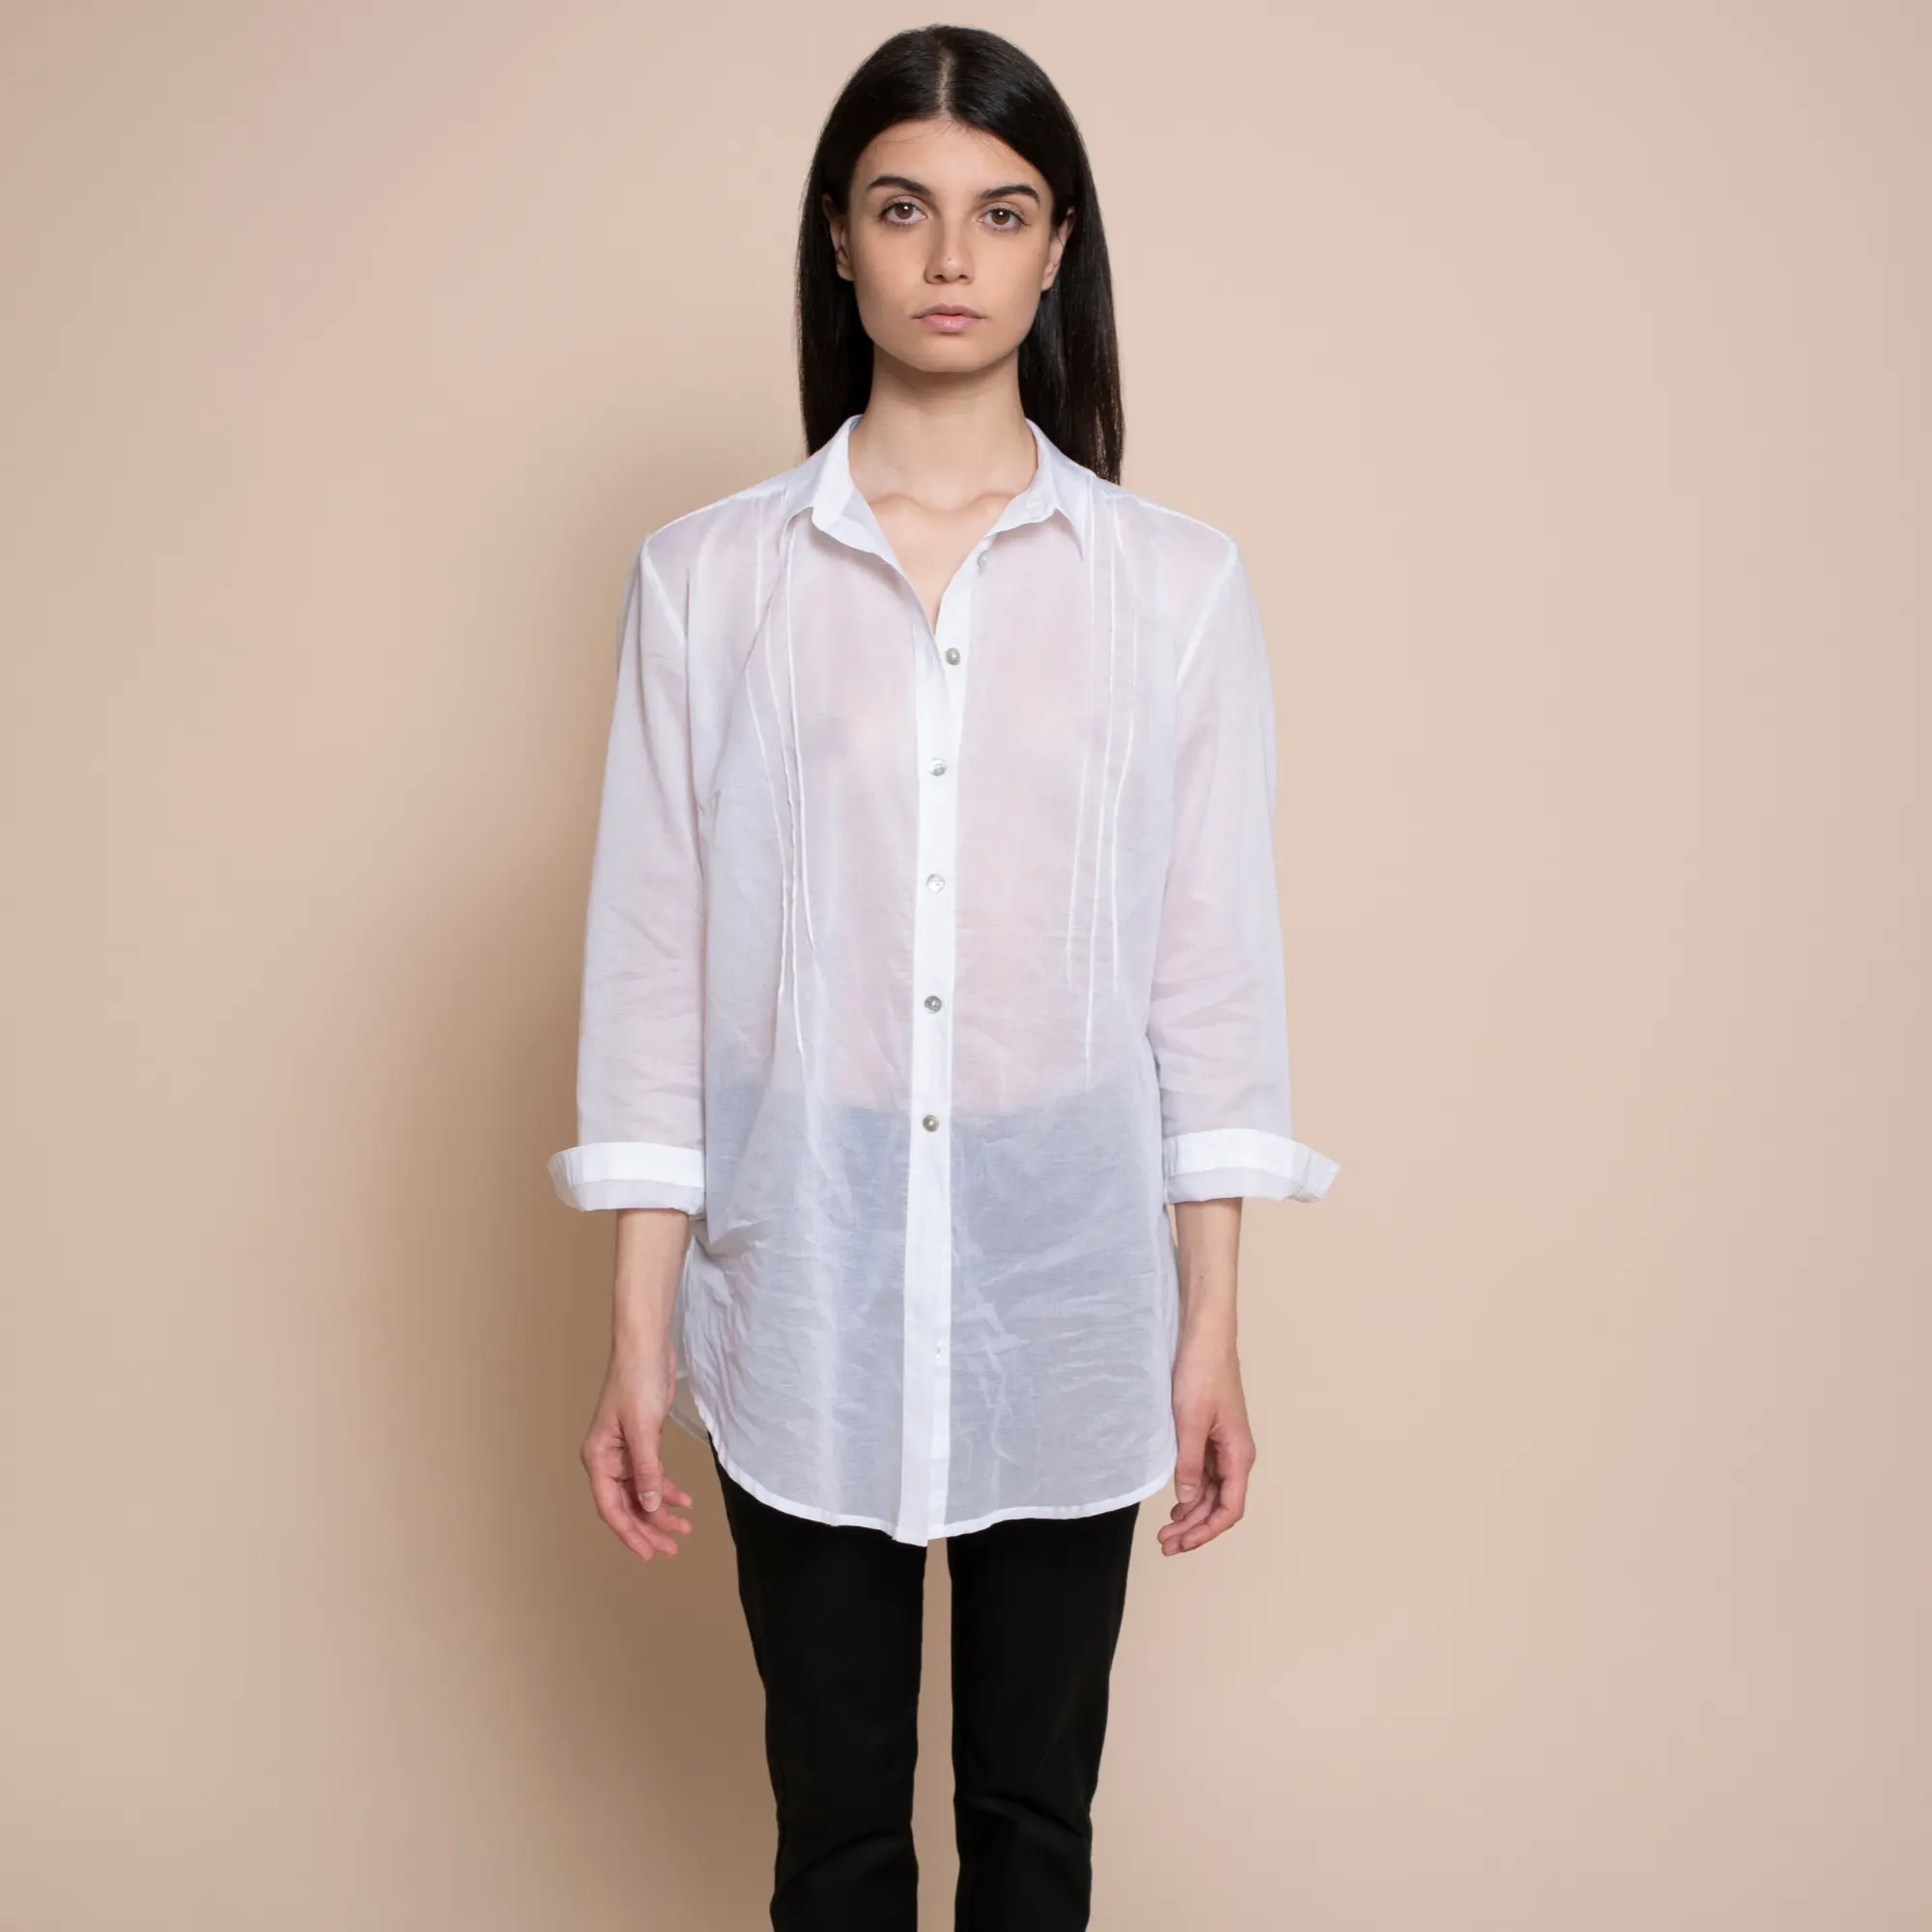 Camisa hecha en Italia de alta calidad, tela de muselina de algodón con mangas completas, botones de perlas, 3/4 Para el día